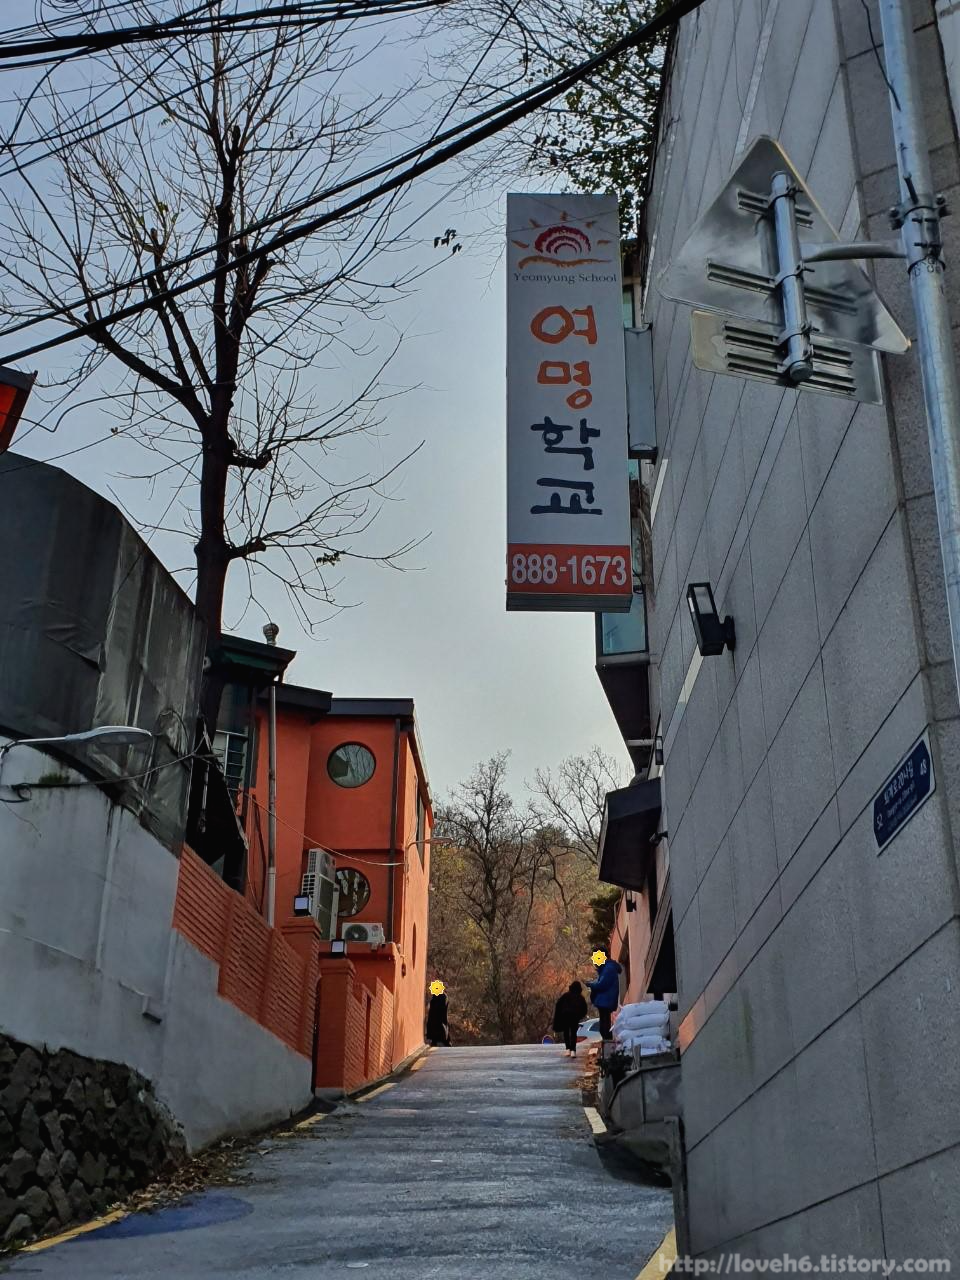 남산 Namsan/ 계속 직진하면 여명학교라는 건물이 보입니다. 그곳을 더 지나면 횡단보도가 나옵니다